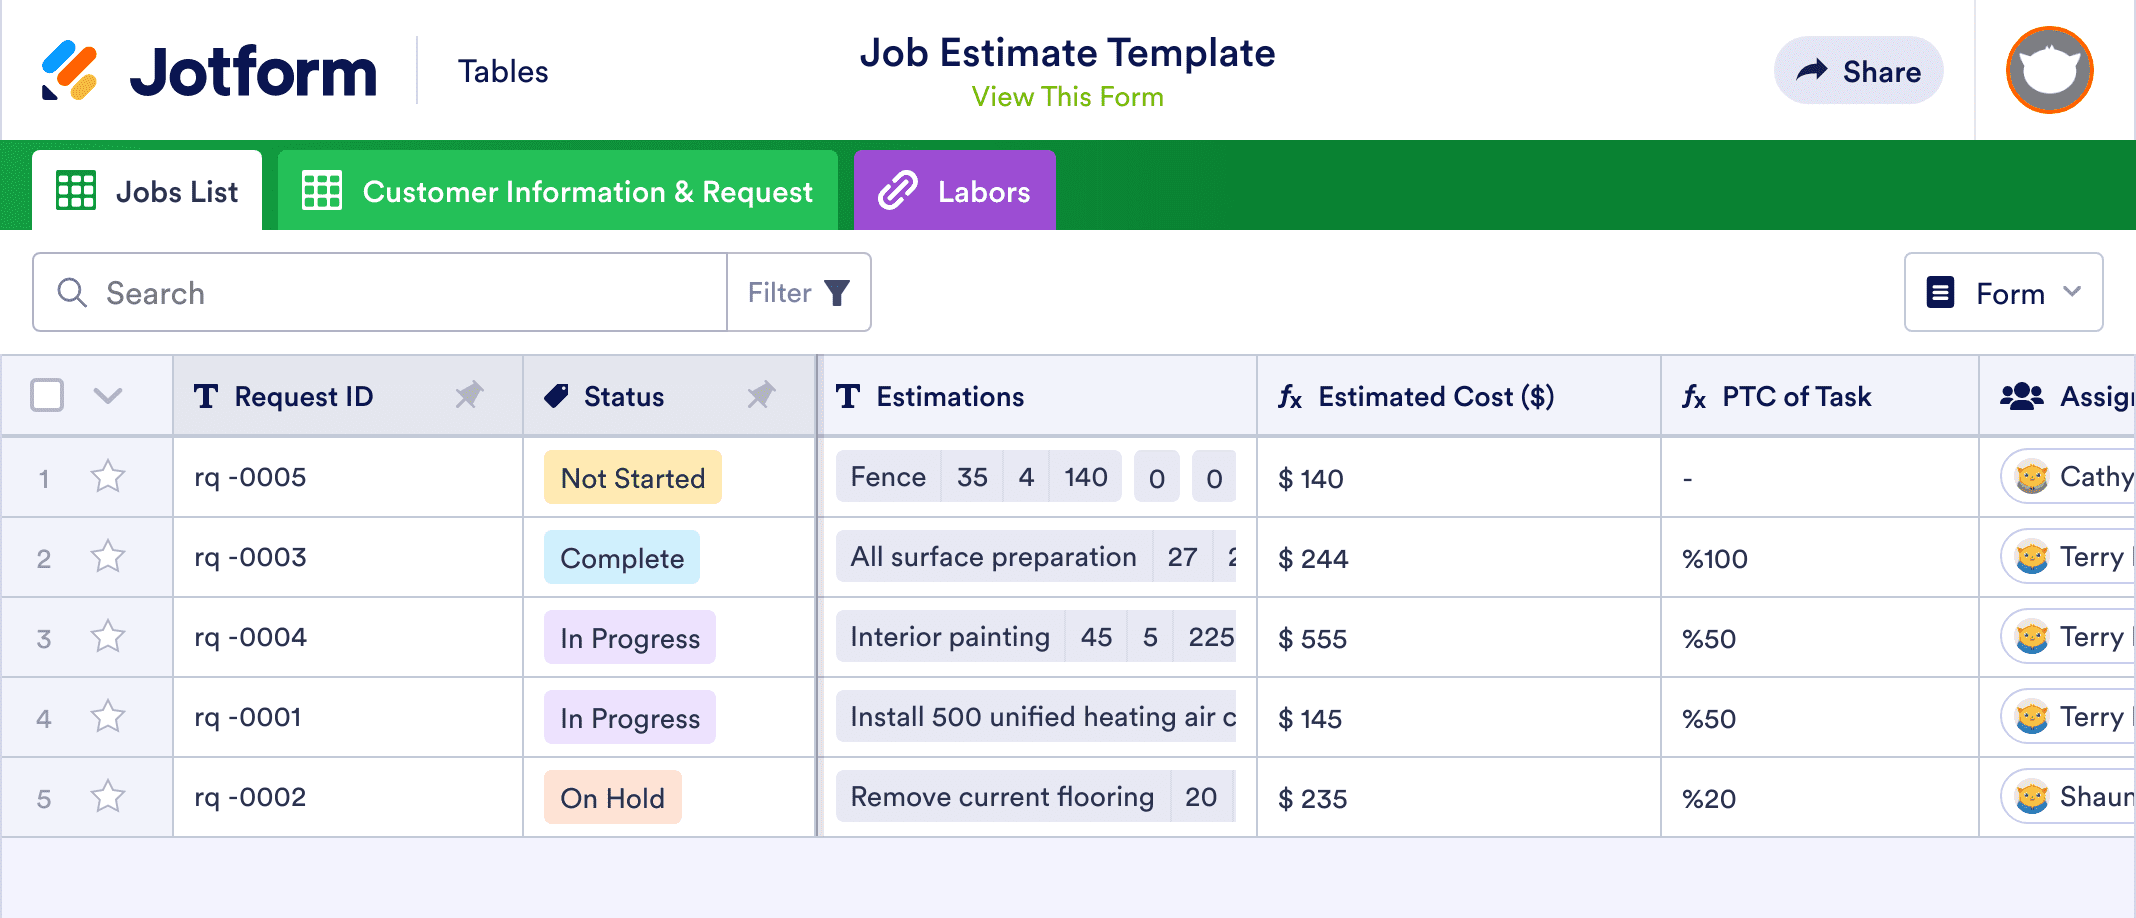 Job Estimate Template